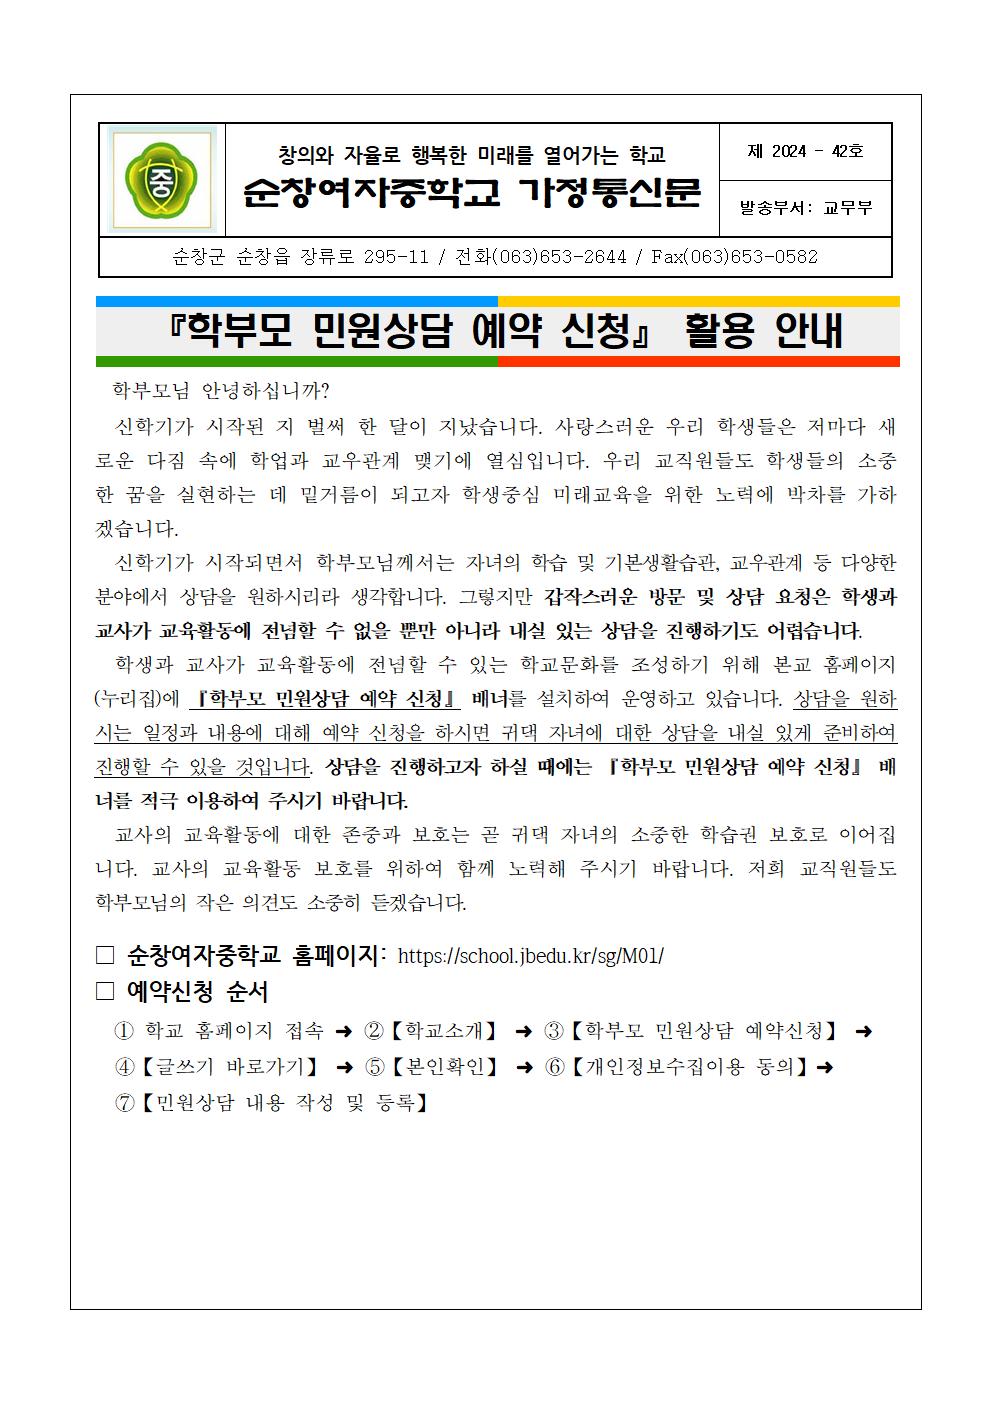 학부모 민원상담 예약신청 배너활용 가정통신문001